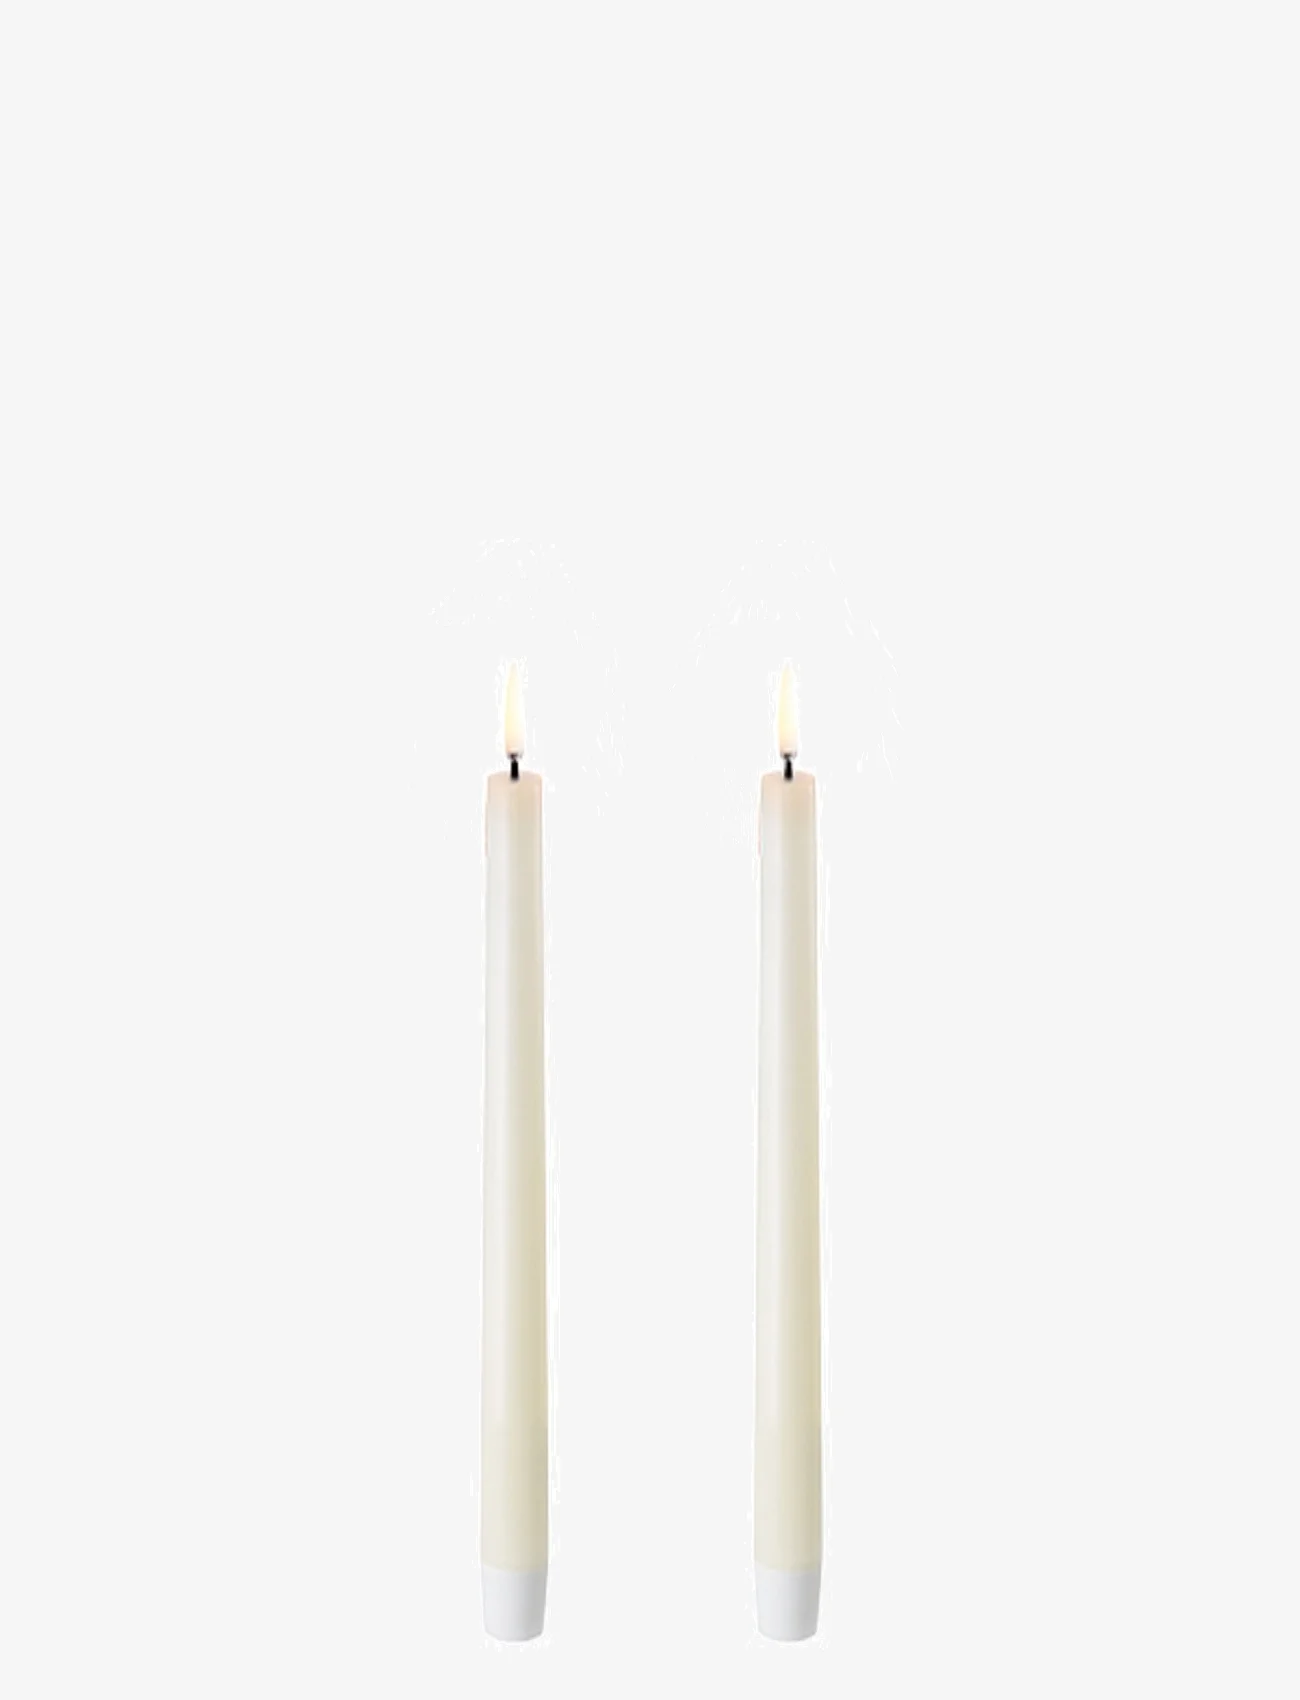 UYUNI Lighting - Pillar LED Candle - madalaimad hinnad - ivory - 0